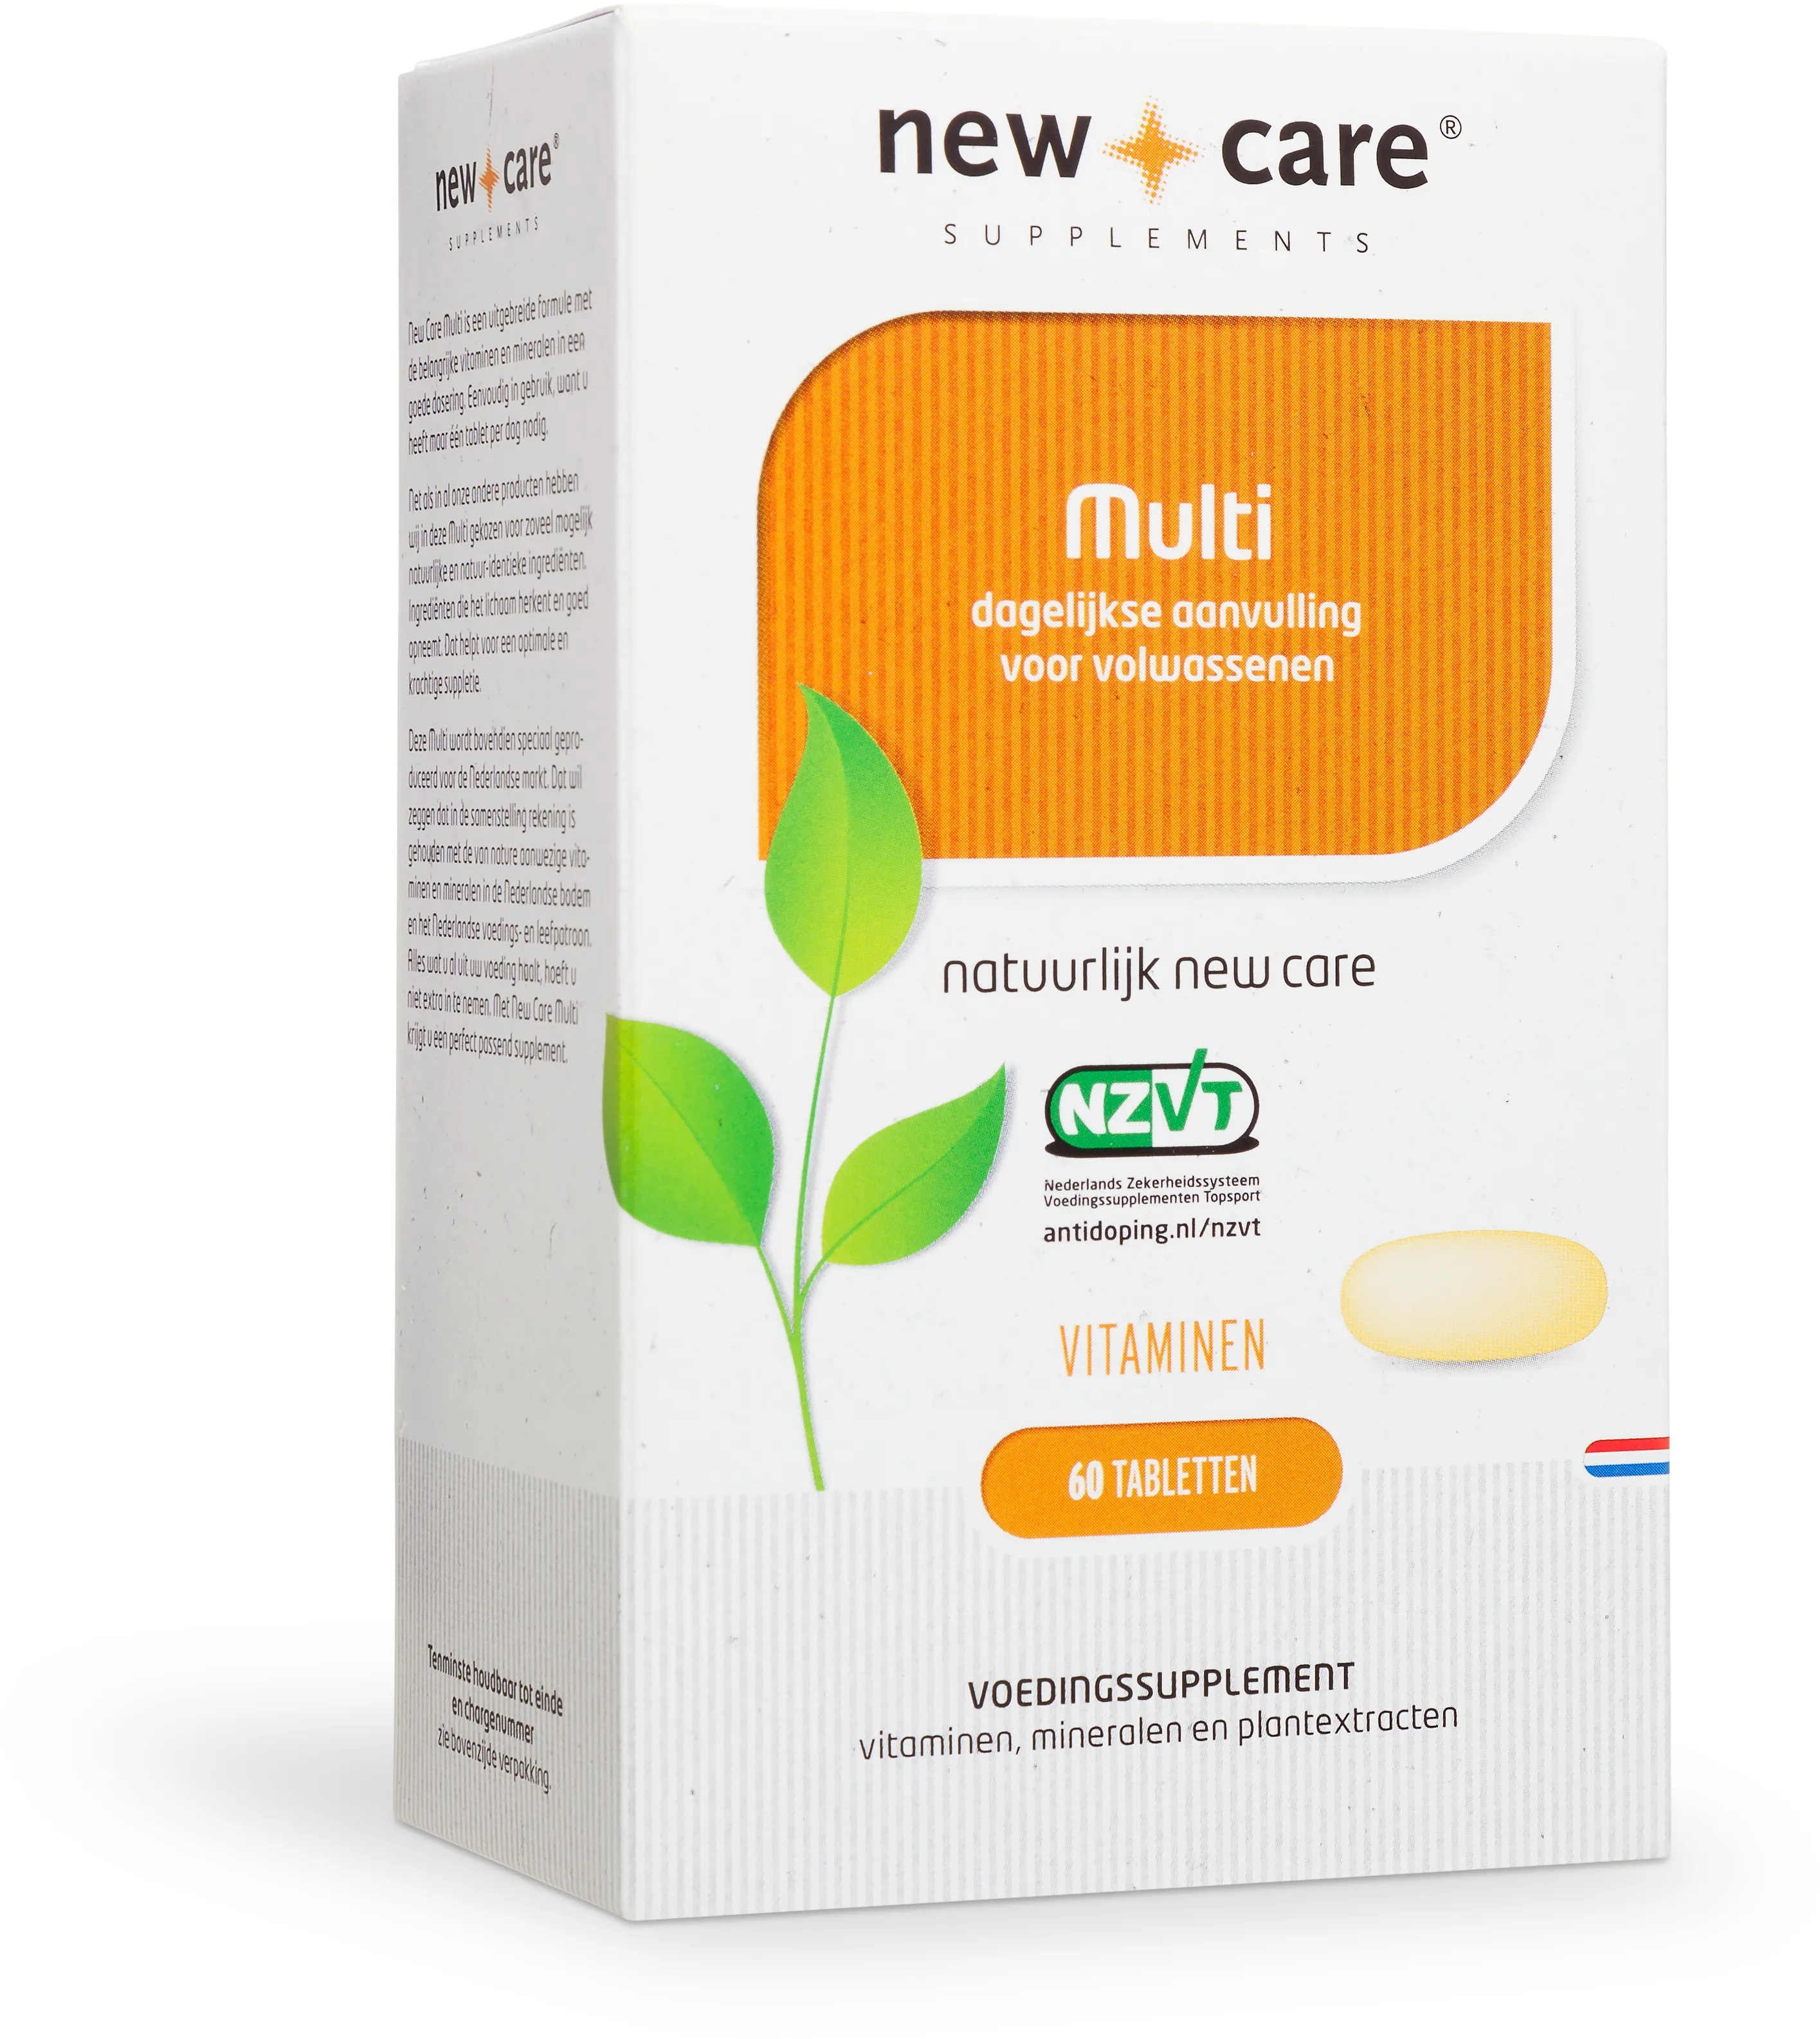 New care multi tabletten p830